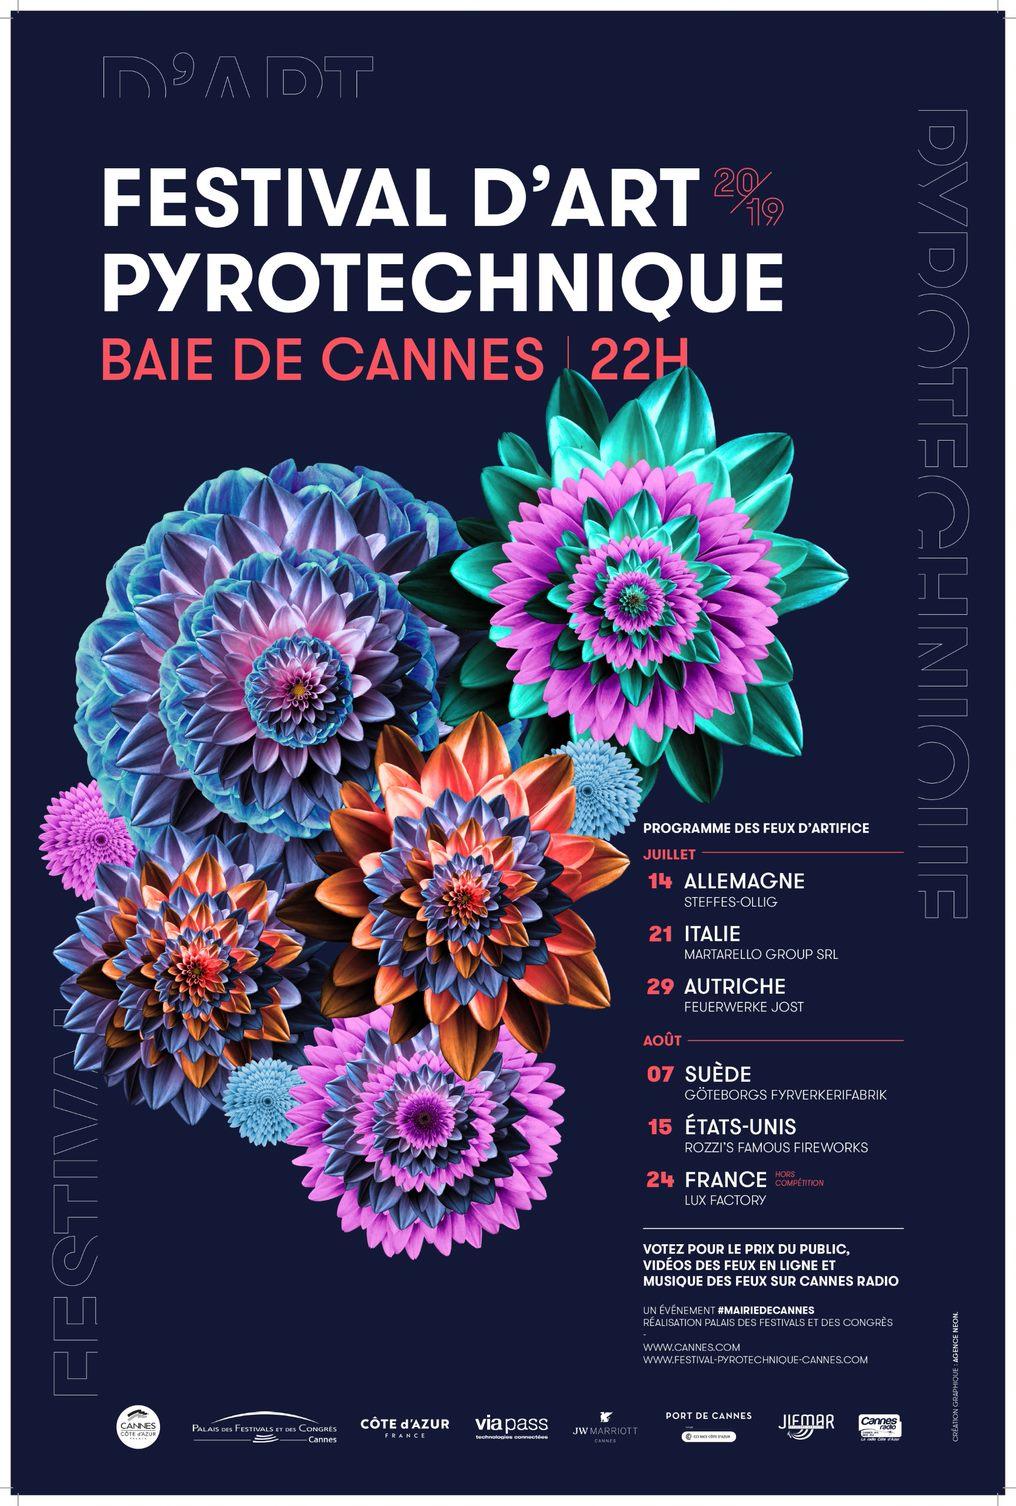 Festival d'Art Pyrotechnique 2019